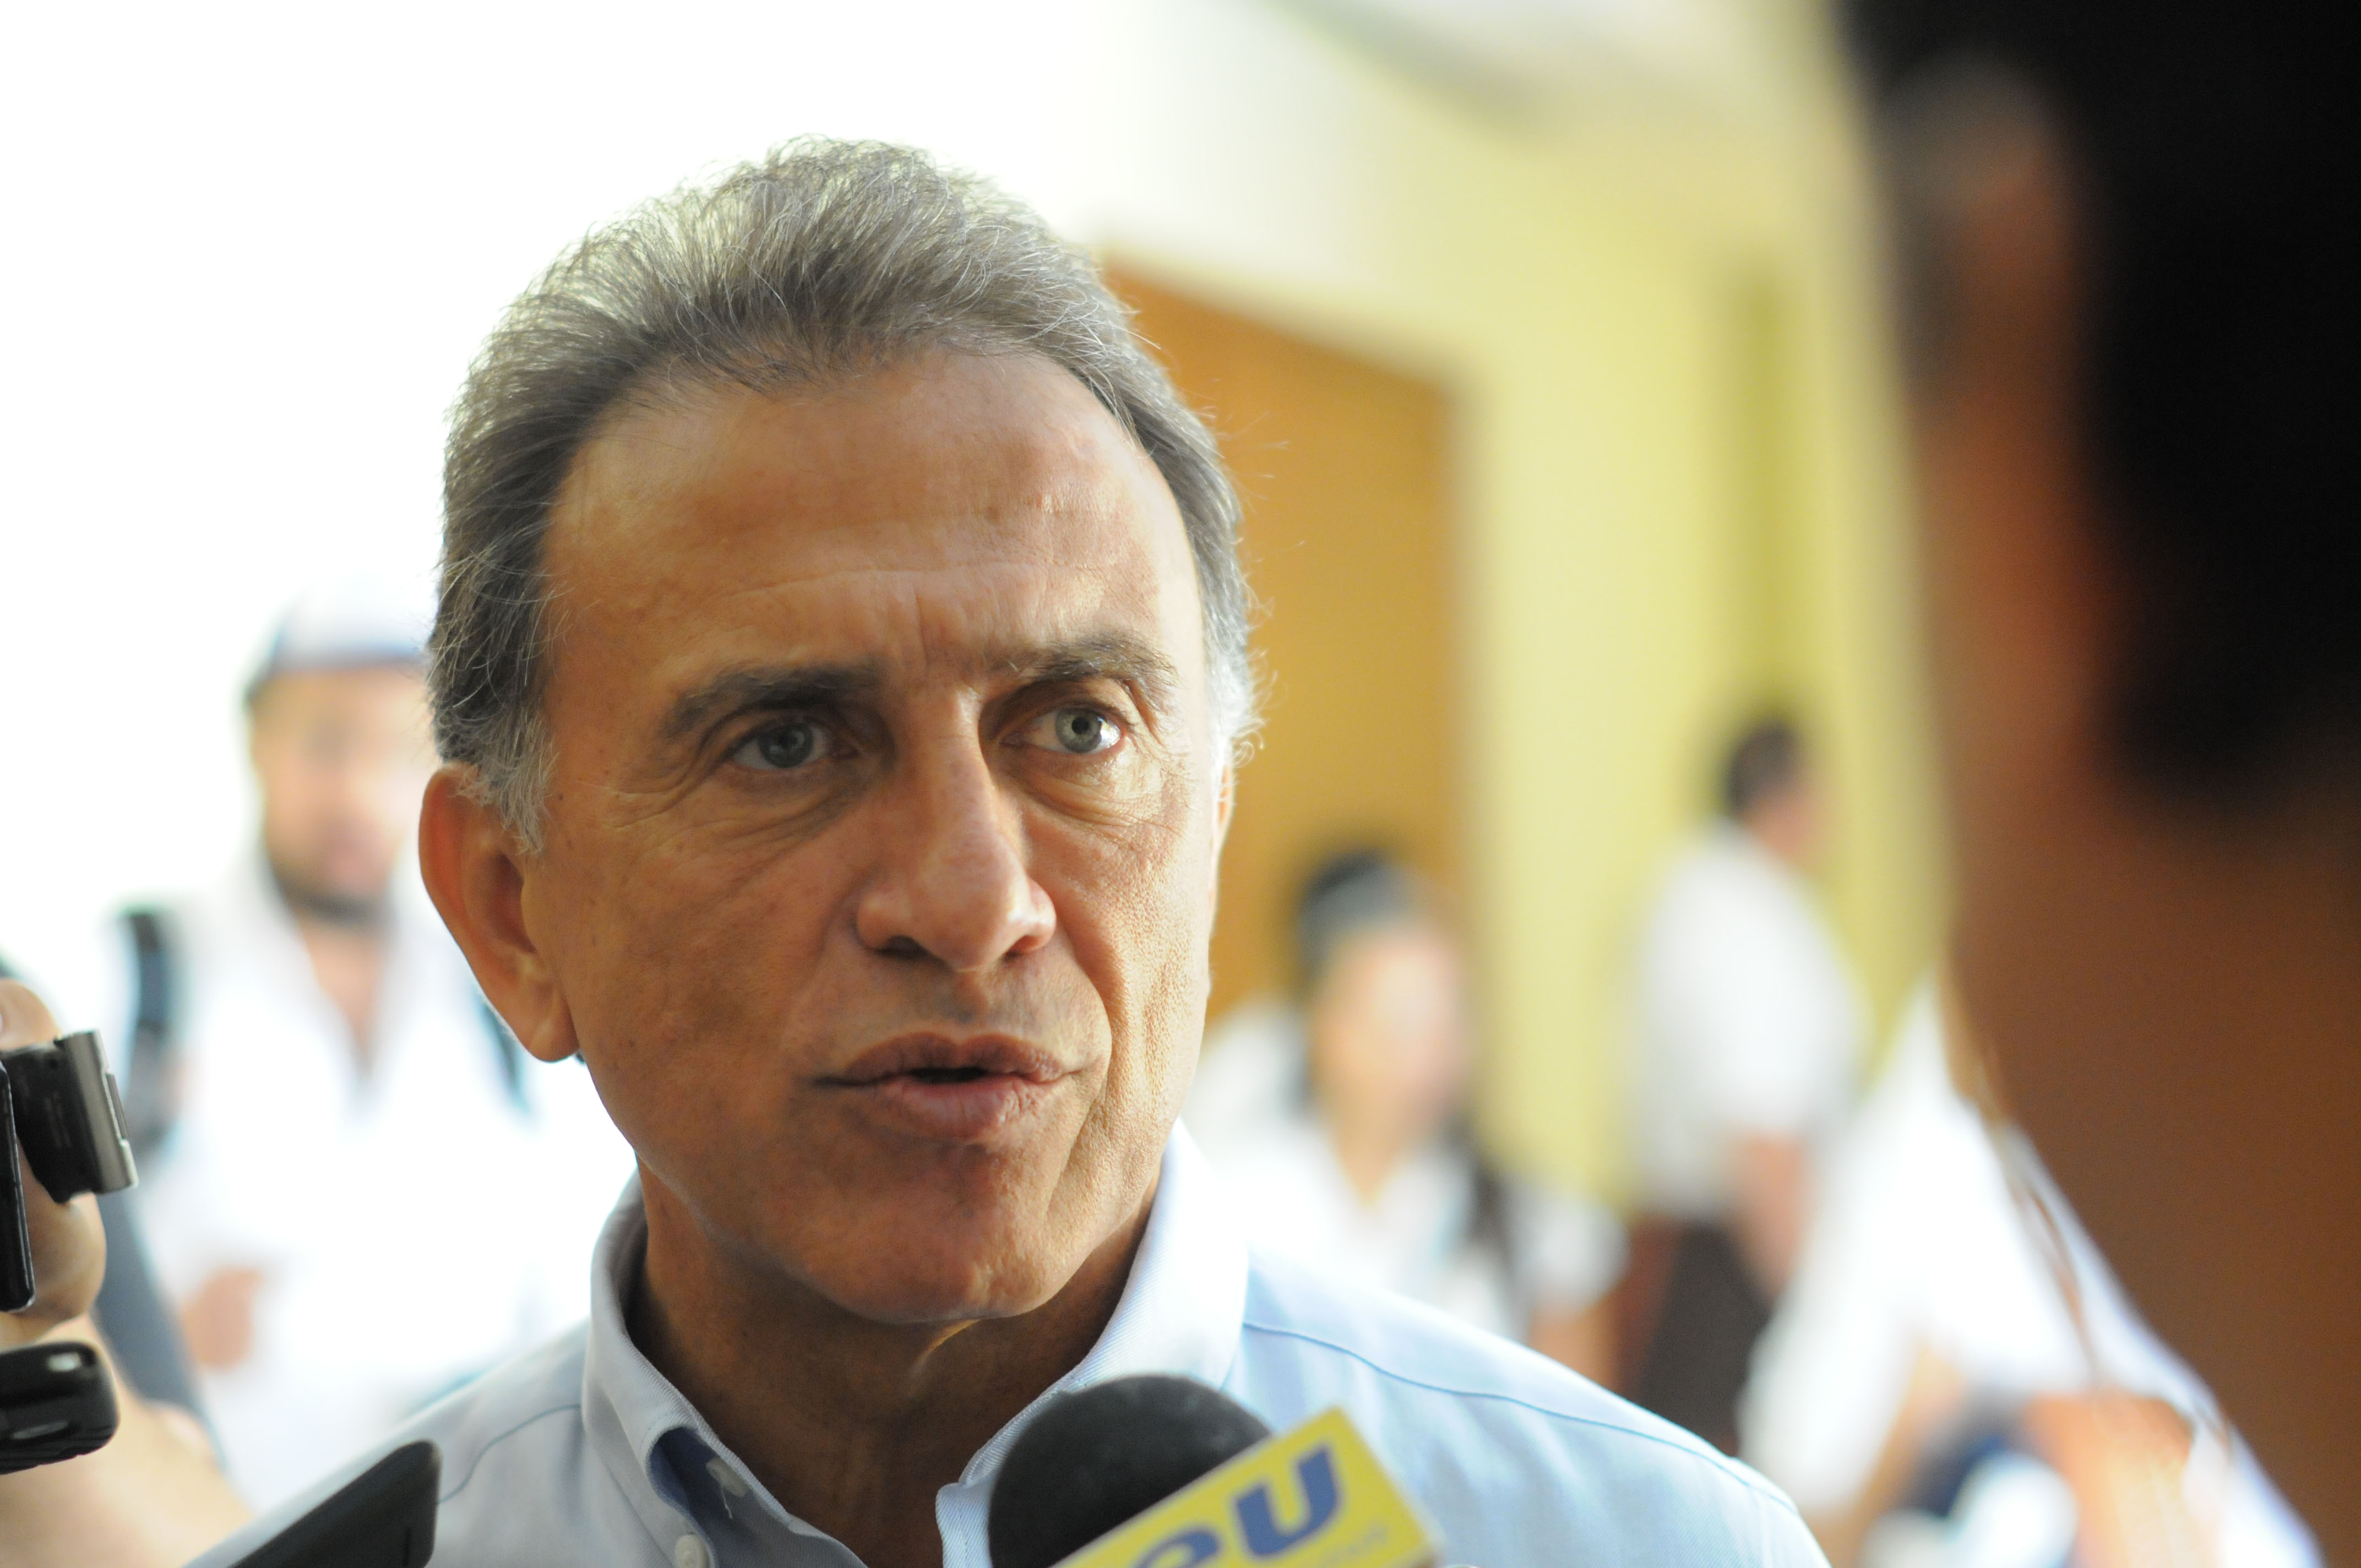  A javier Duarte “le urge un psiquiatra”, se quiere victimizar: Miguel Ángel Yunes